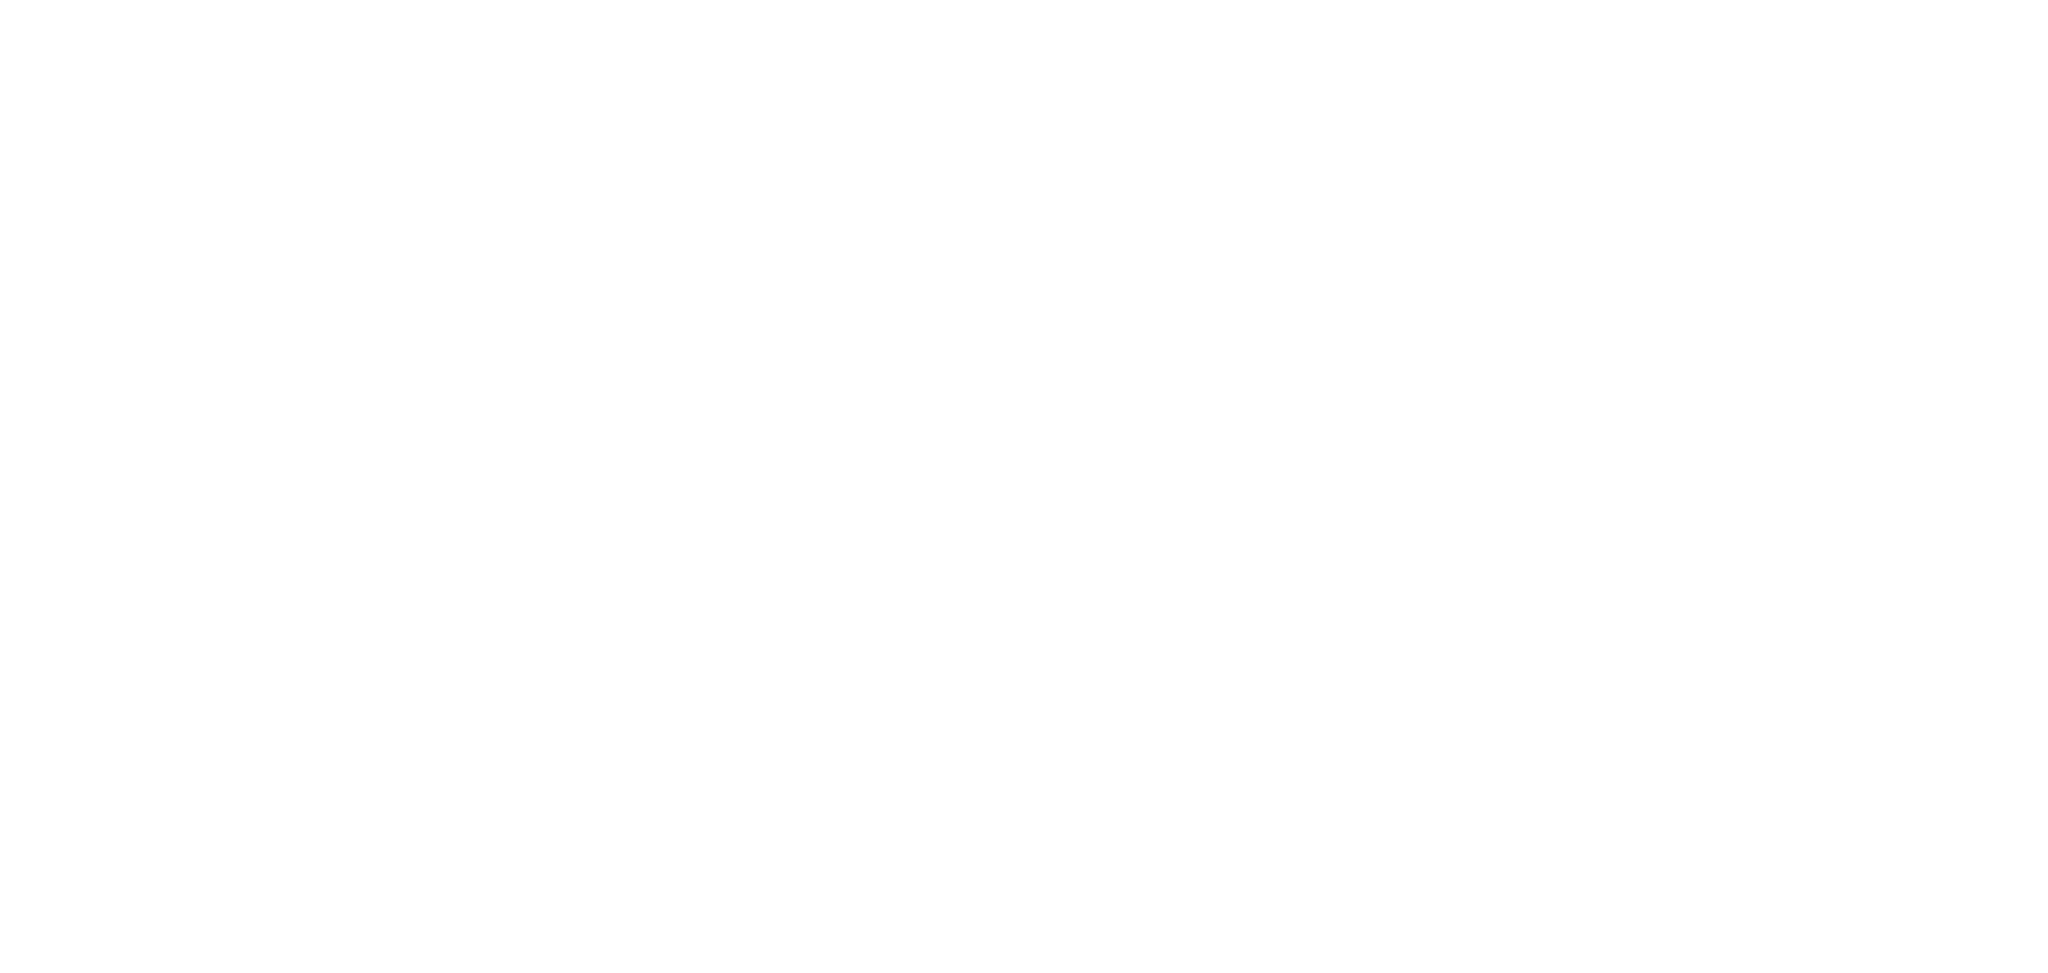 MaynardChildrensHospital_wh